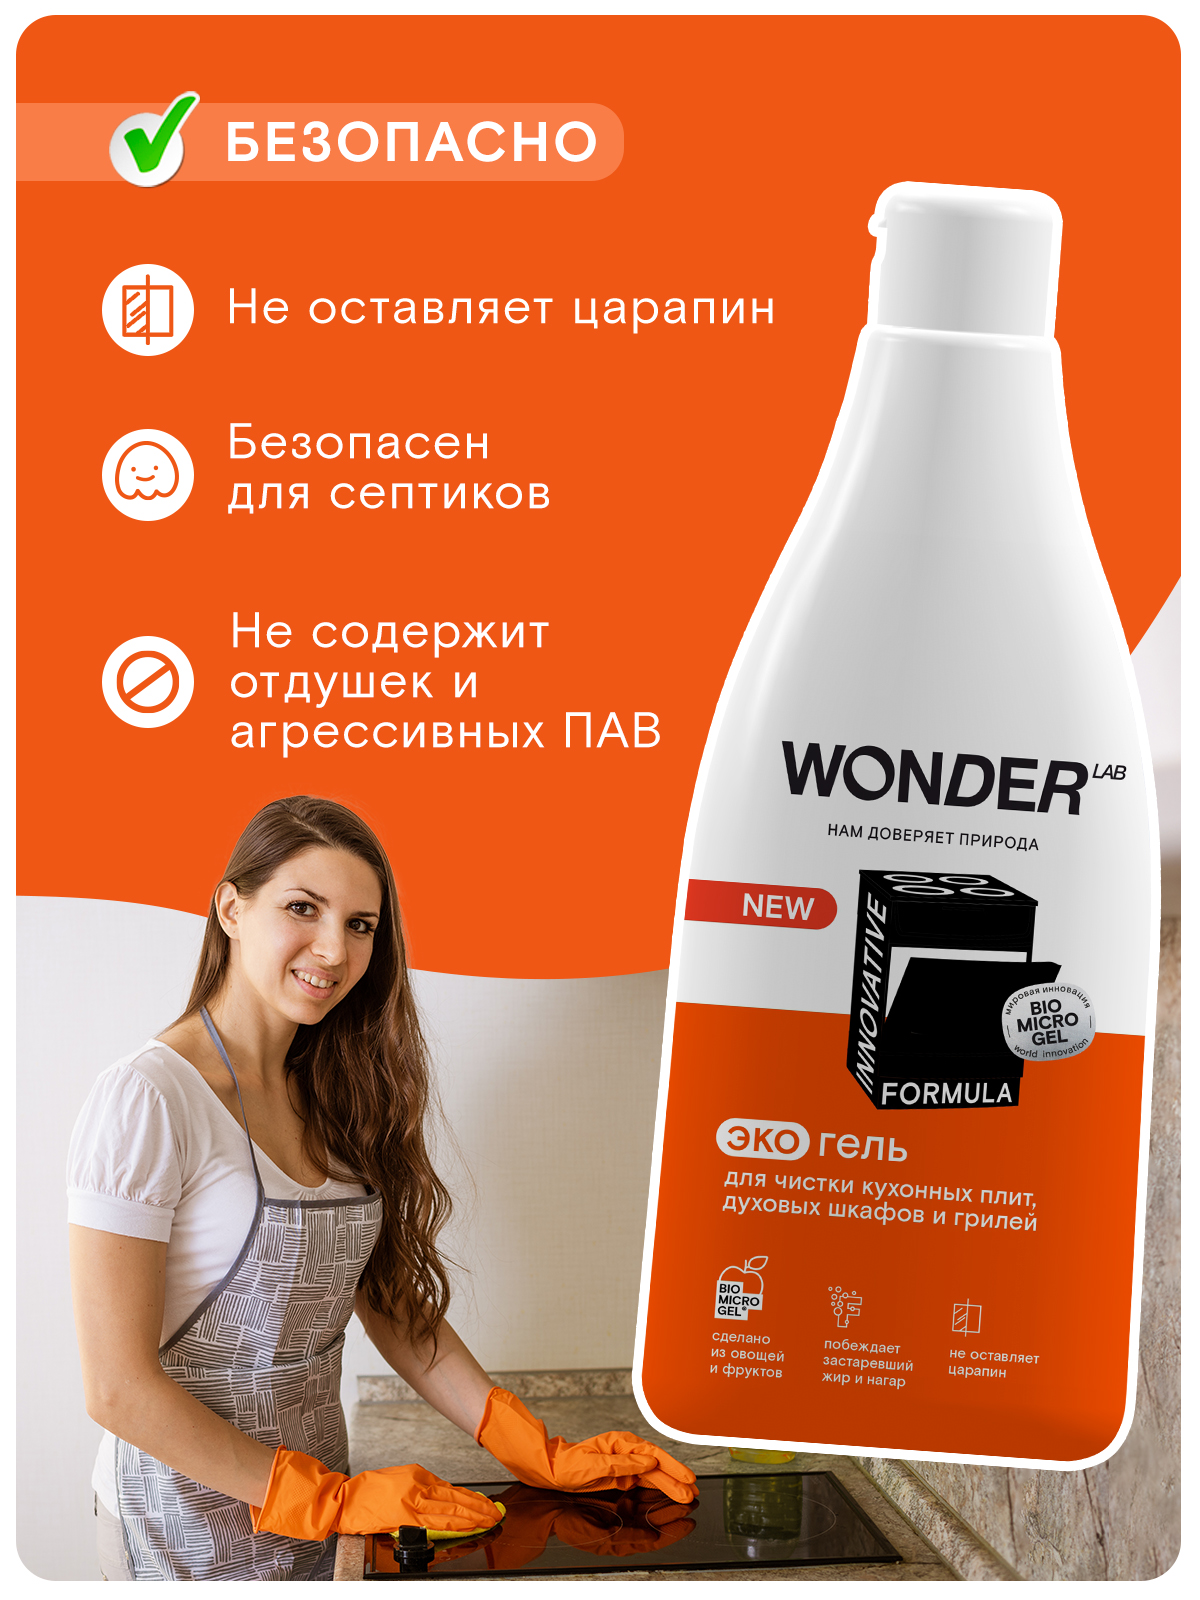 Wonder Lab Экогель для чистки кухонных плит и духовых шкафов и грилей 0,55 л